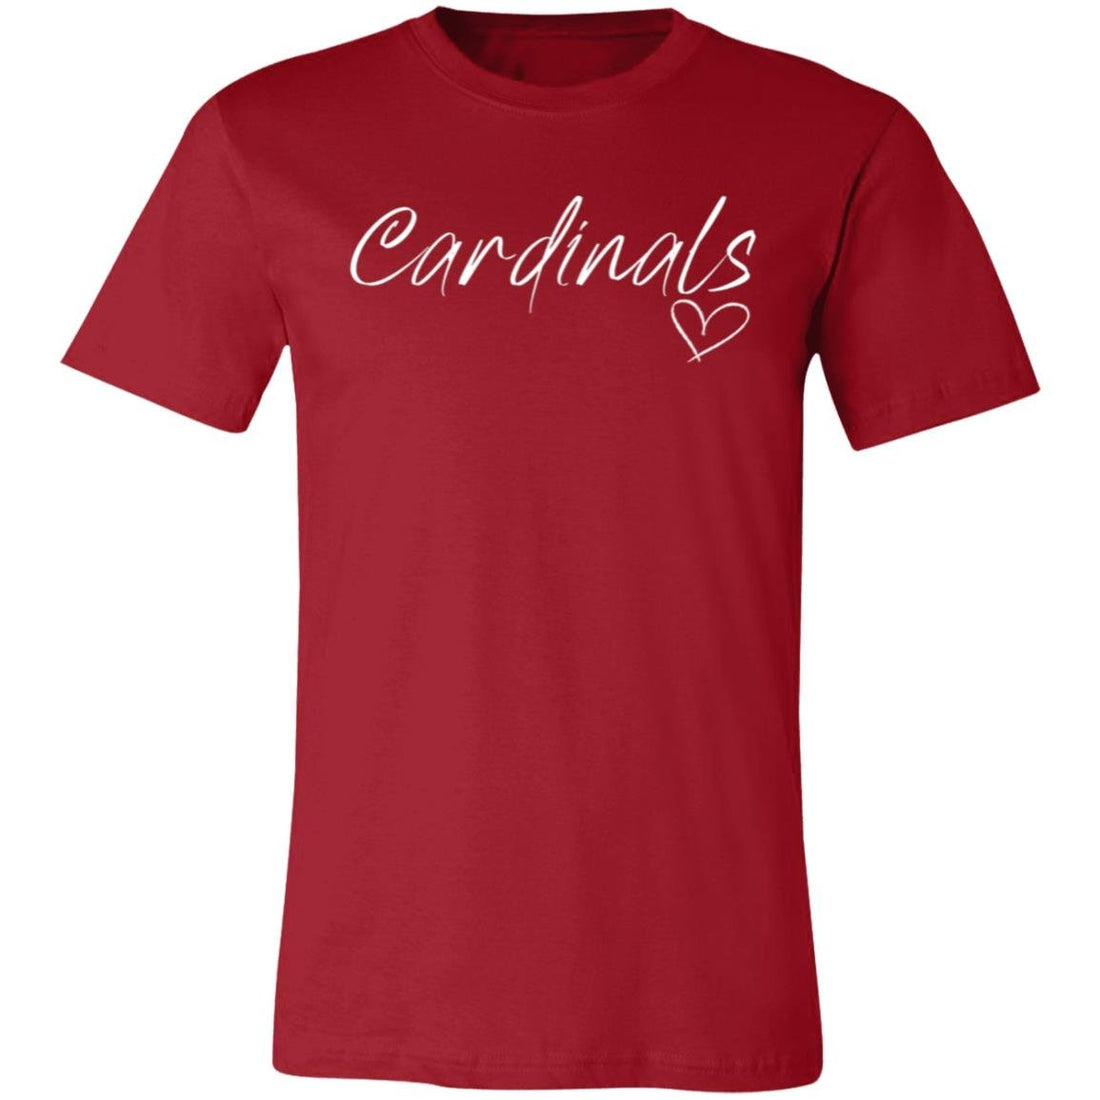 Cardinals Heart T-Shirt - T-Shirts - Positively Sassy - Cardinals Heart T-Shirt